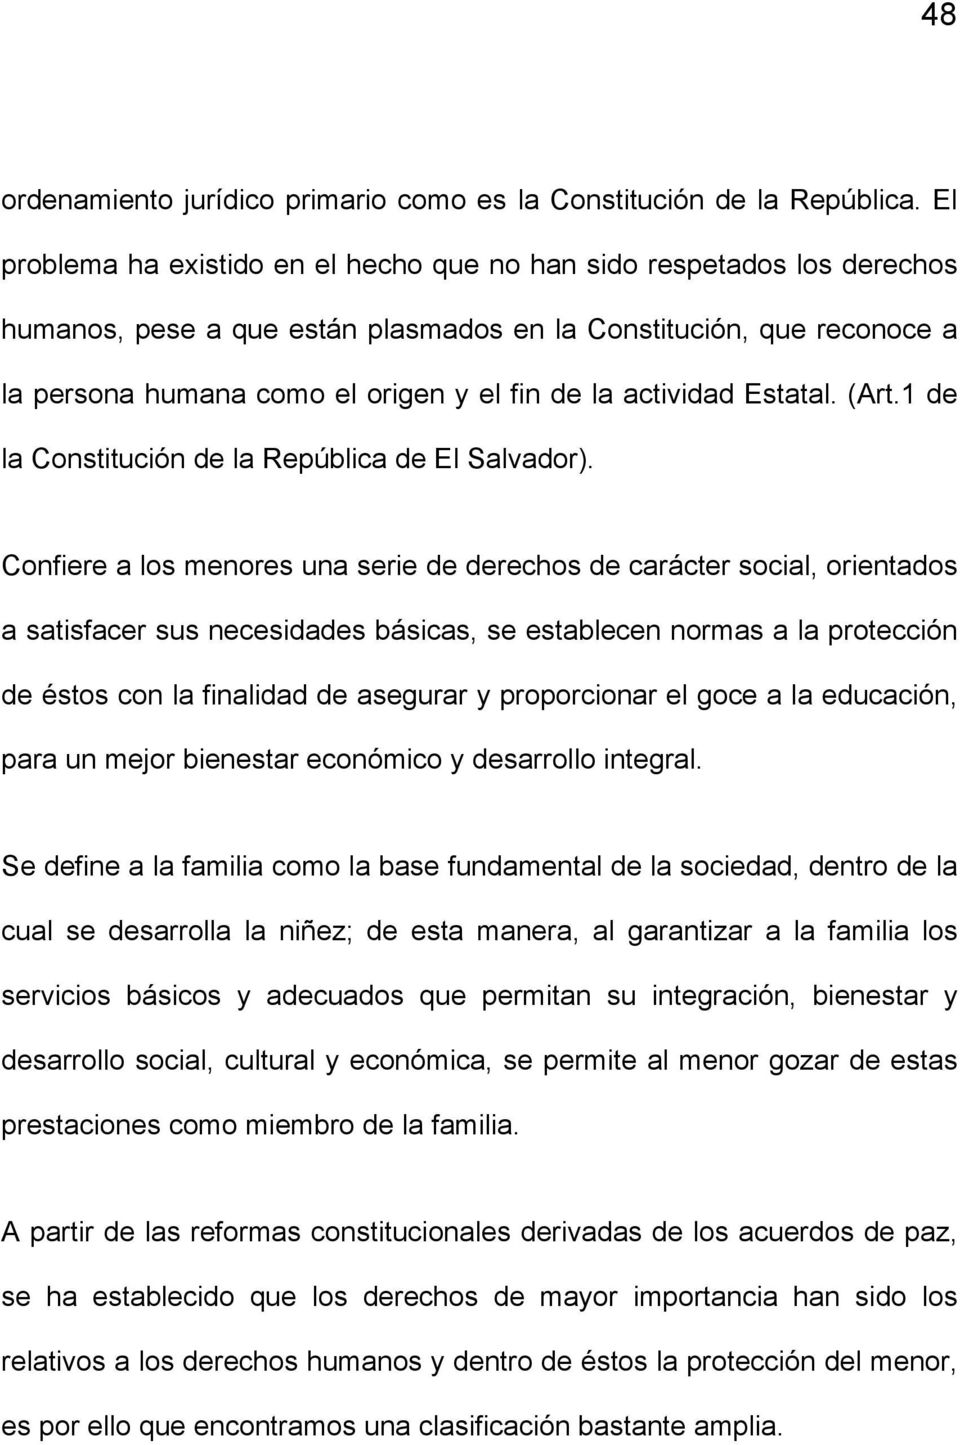 actividad Estatal. (Art.1 de la Constitución de la República de El Salvador).